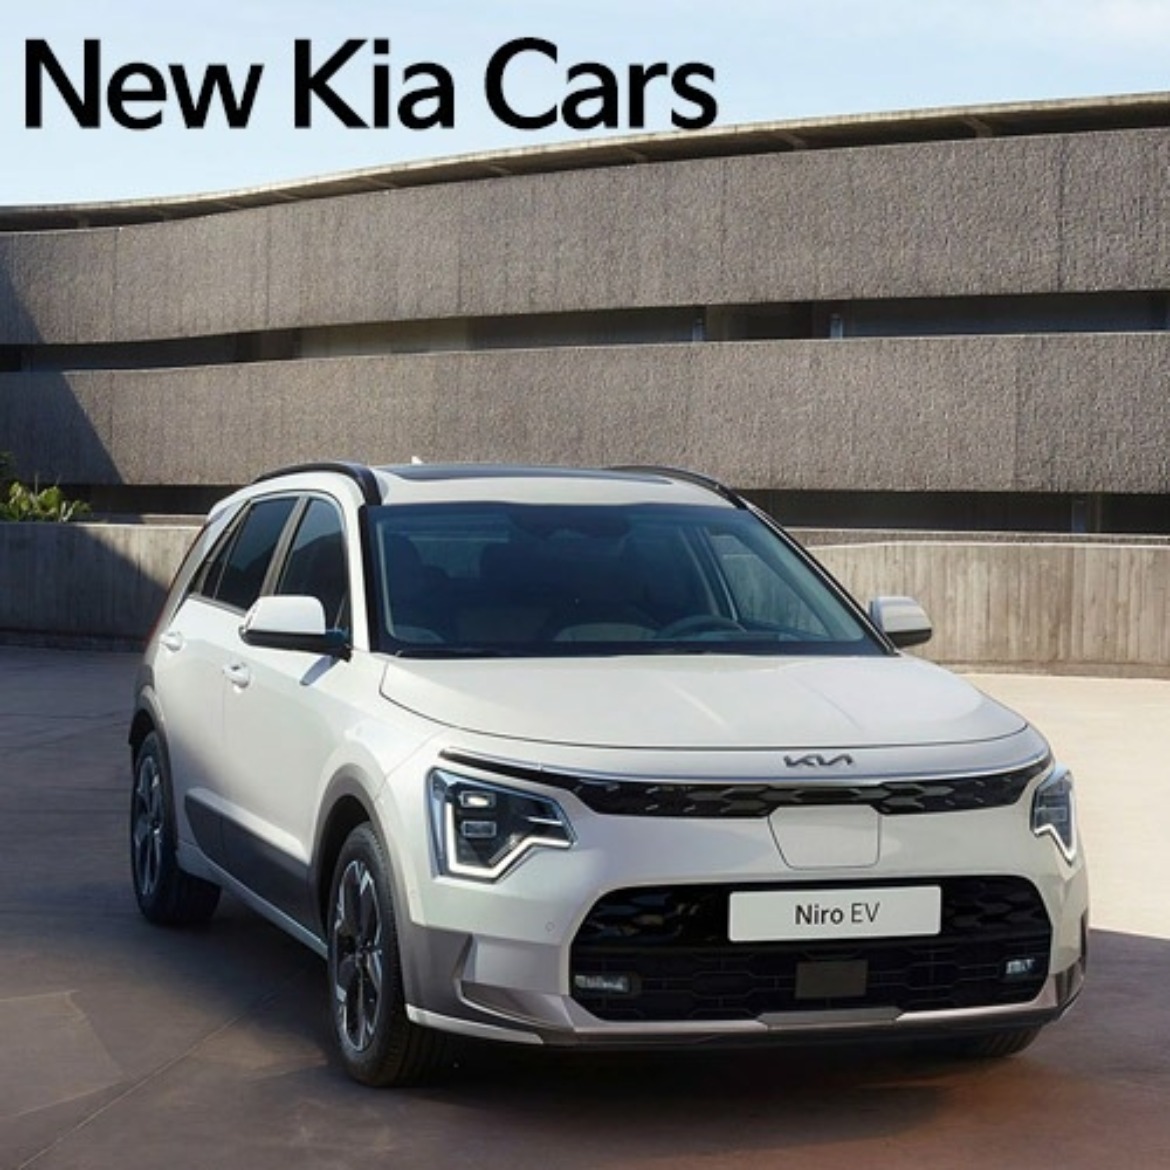 New Kia Cars at Drayton Motors Kia